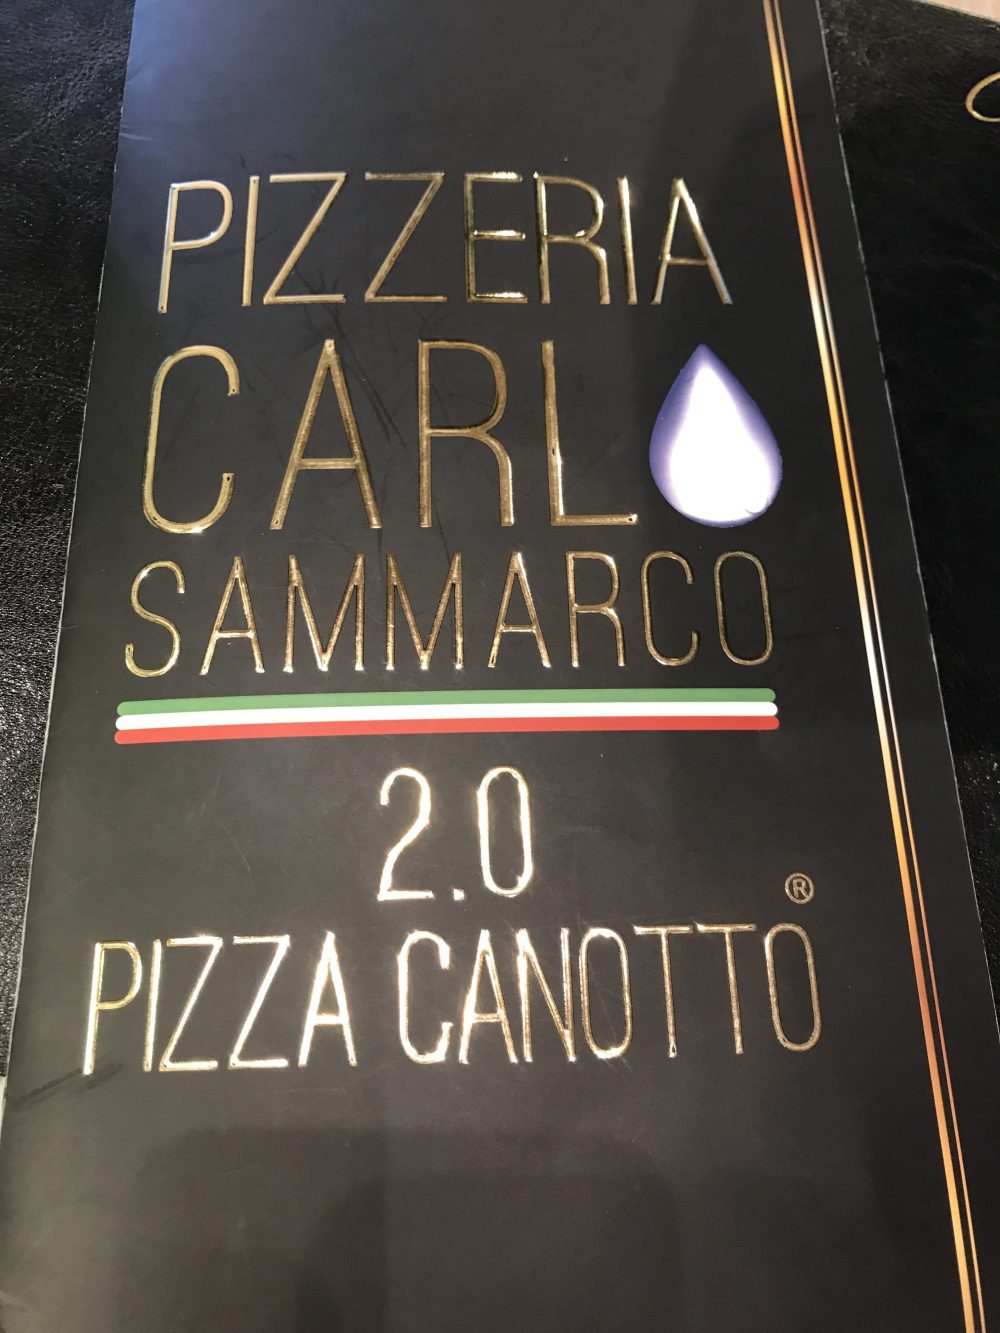 Pizzeria Carlo Sammarco 2.0 - Menu'